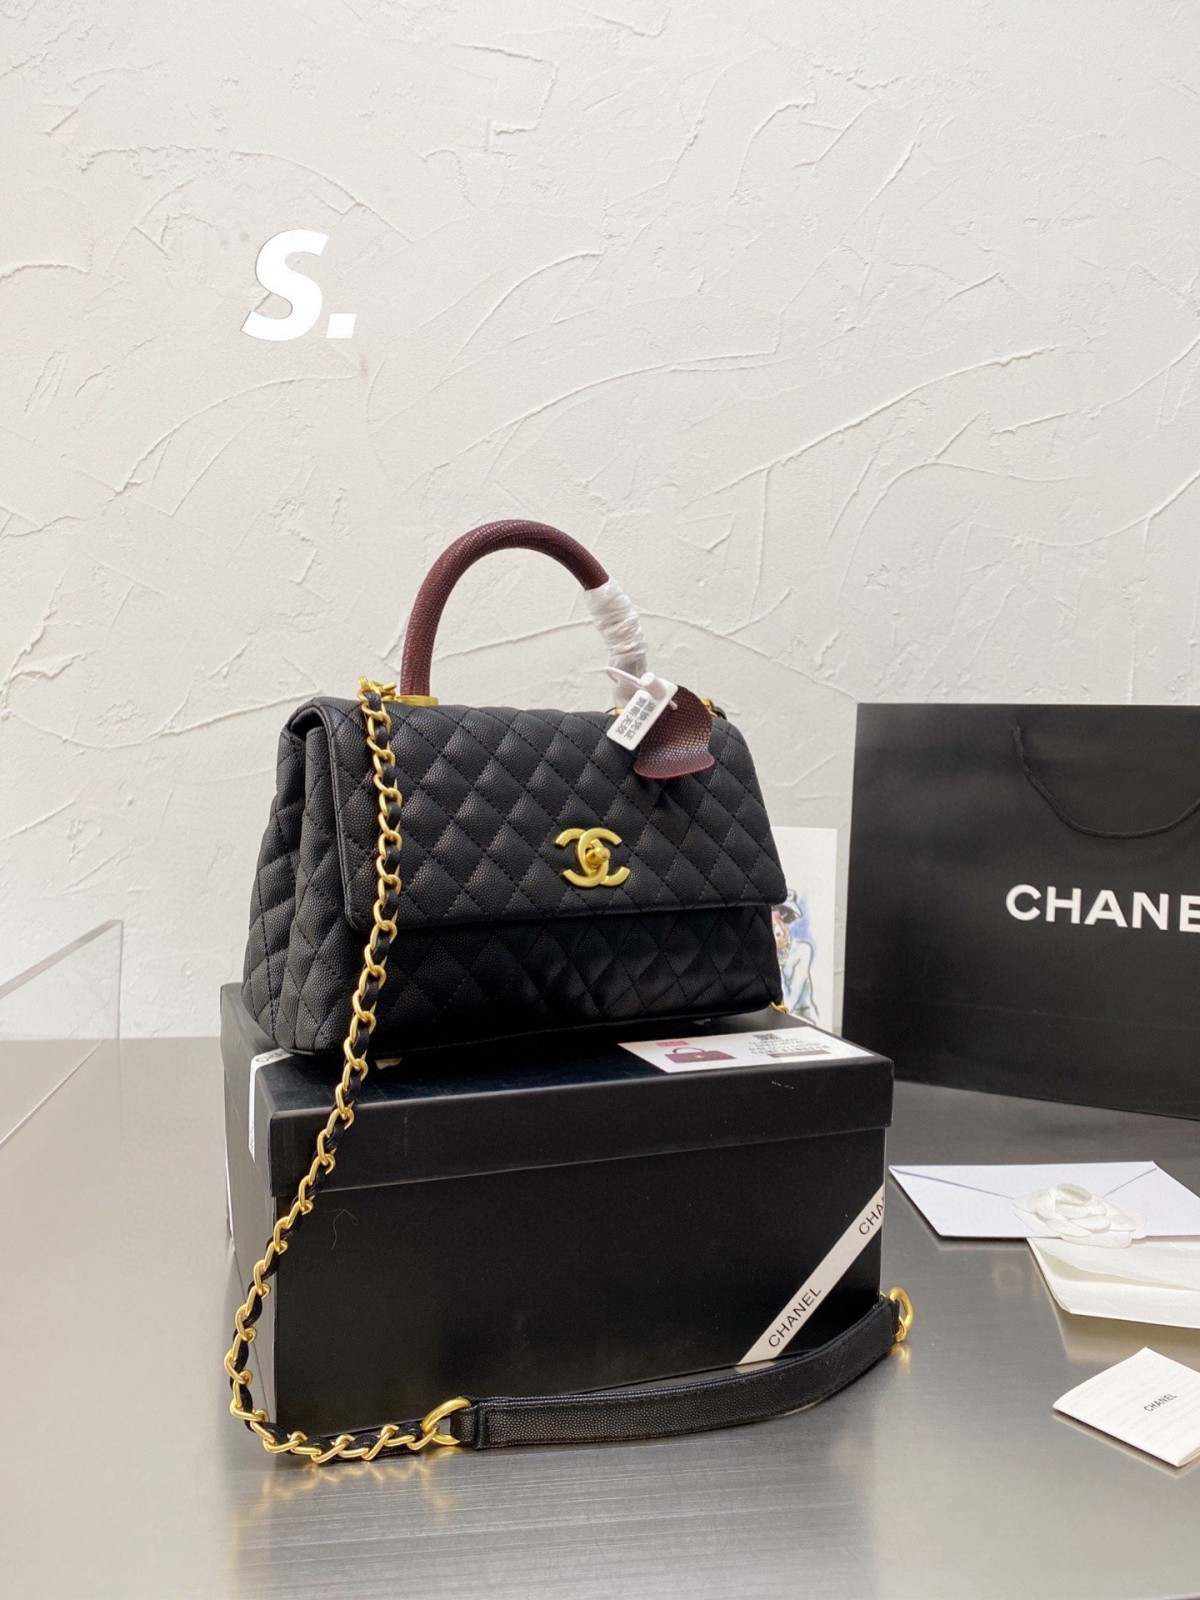 Qalîteya çenteyê replika Chanel Coco Handle li gorî tiştê rastîn e! (2022 Nûvekirî) - Firotgeha Serhêl a Fake Louis Vuitton Bag, Kopî ya sêwirana çenteyê ru